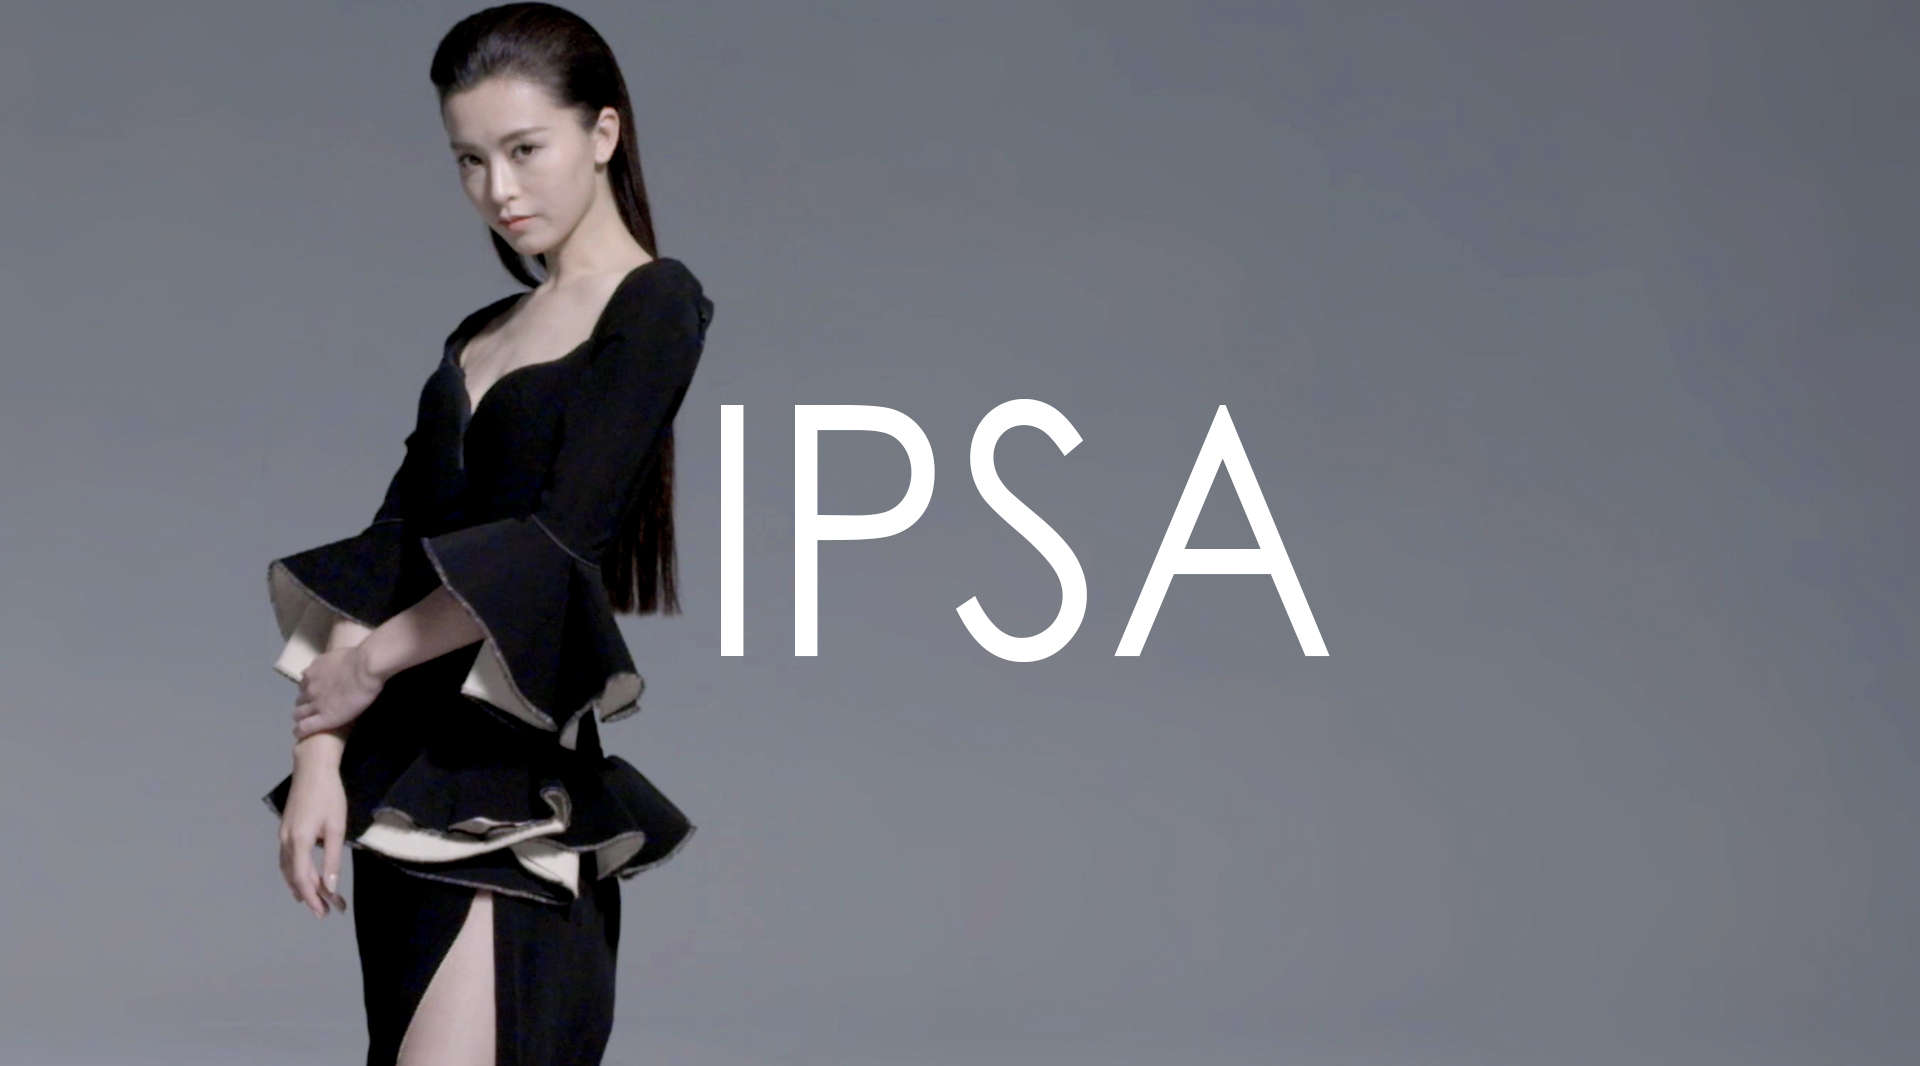 “#look inside” IPSA